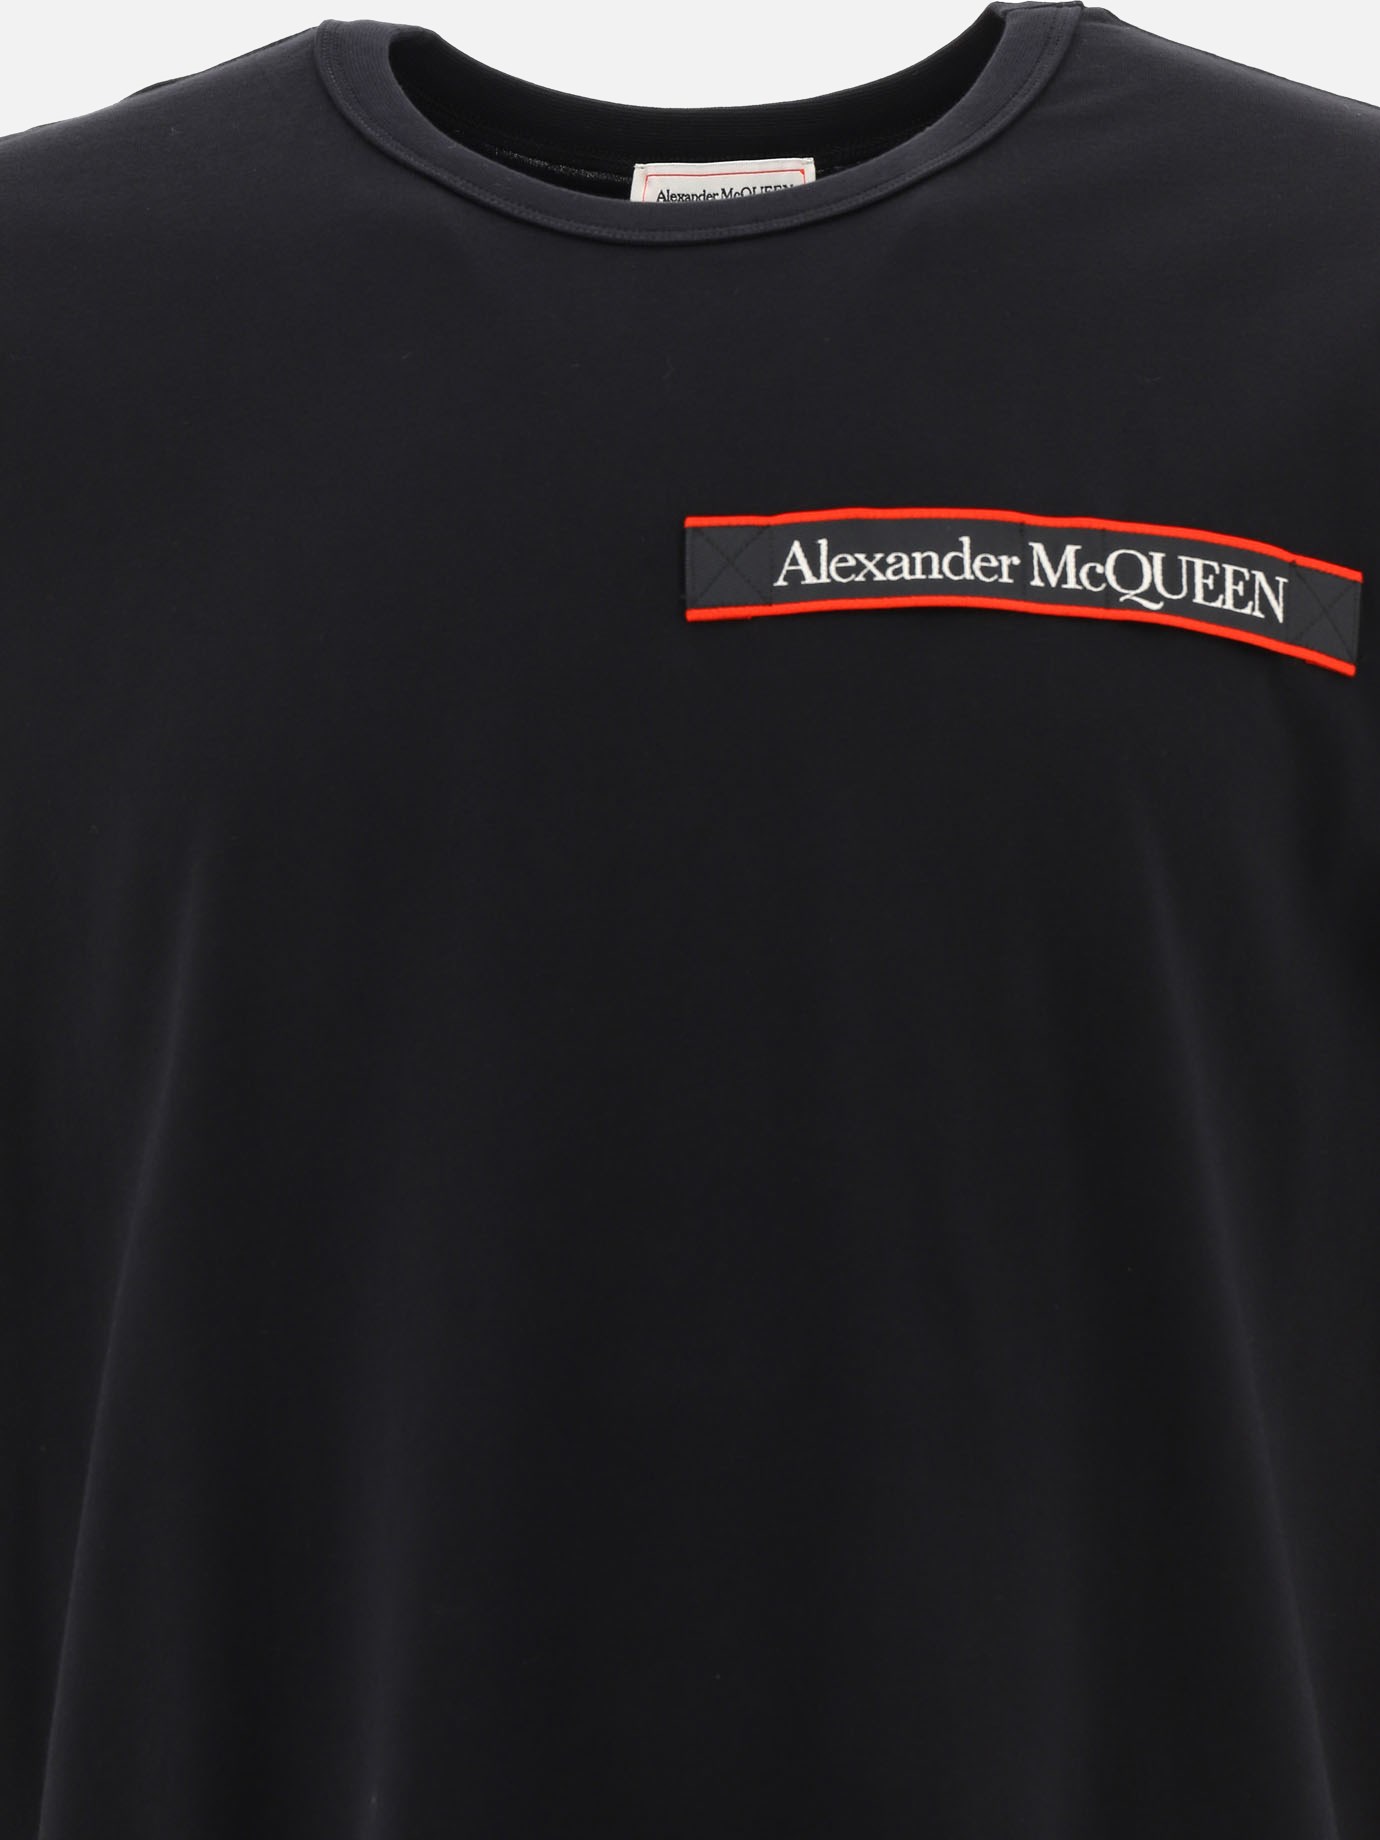  Tape  t-shirt by Alexander McQueen